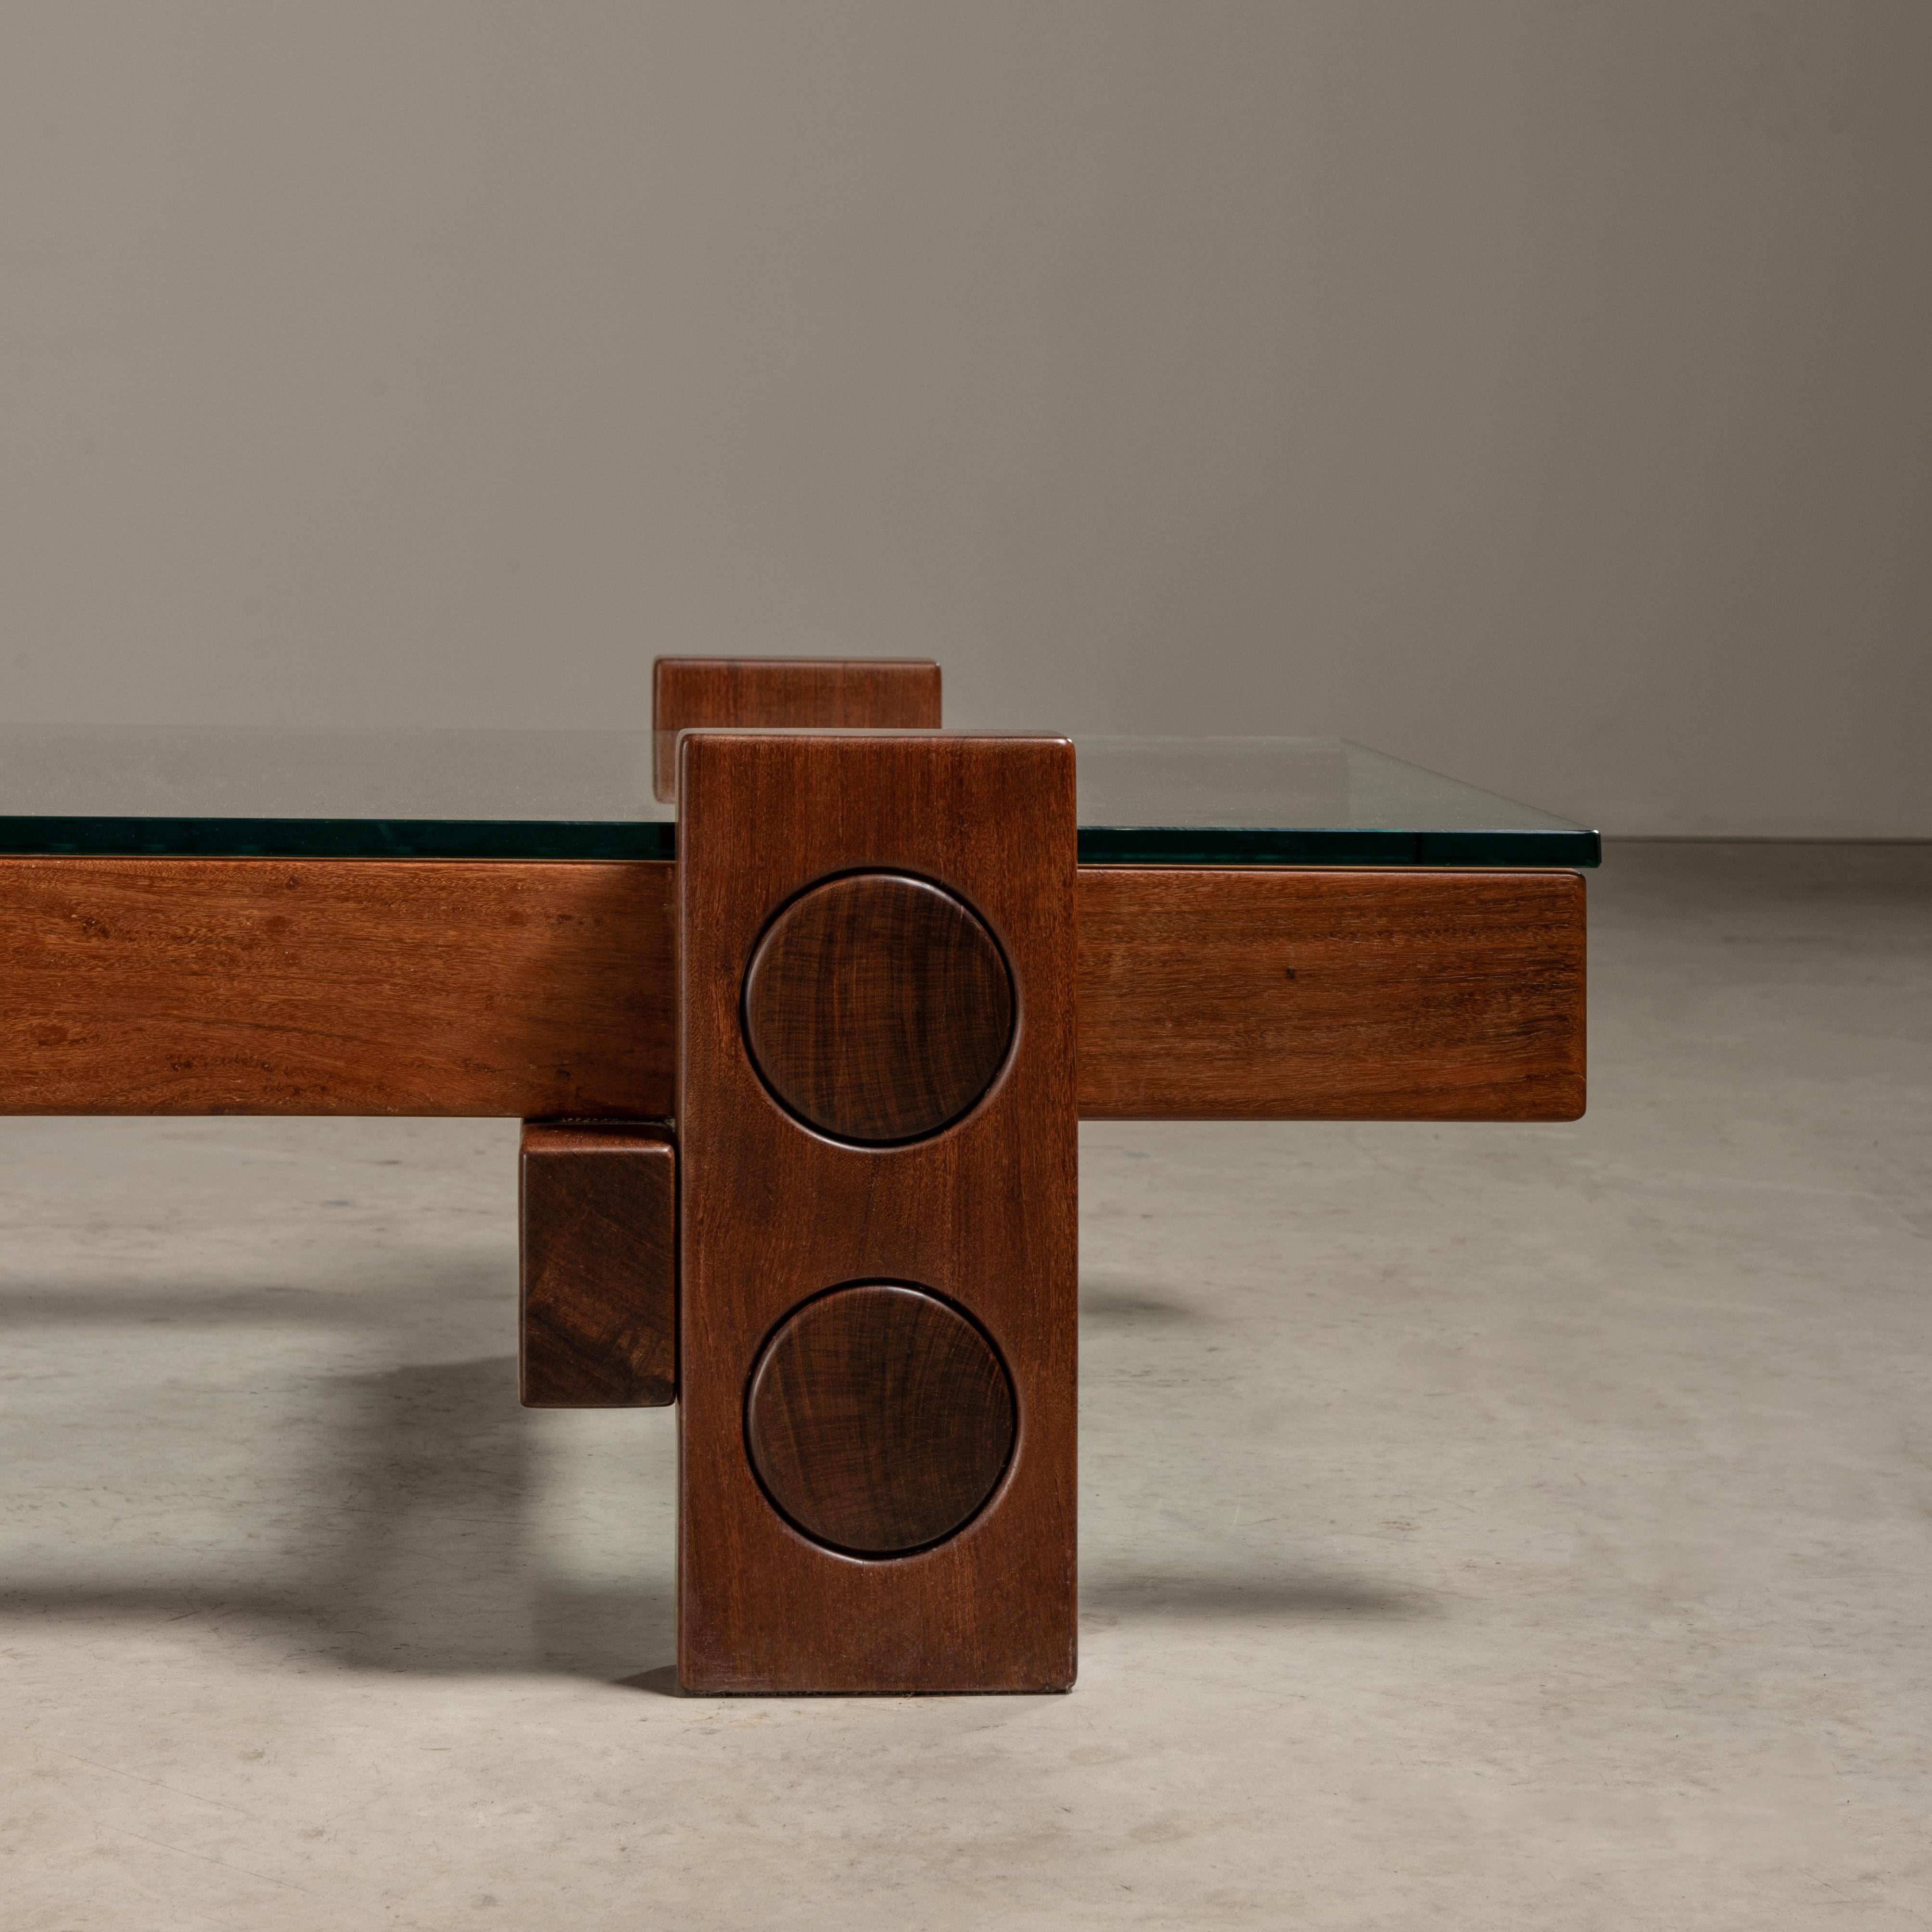 'PC' Center Table in Solid Wood, Zanini de Zanine, Brazilian Contemporary Design In New Condition For Sale In Sao Paulo, SP